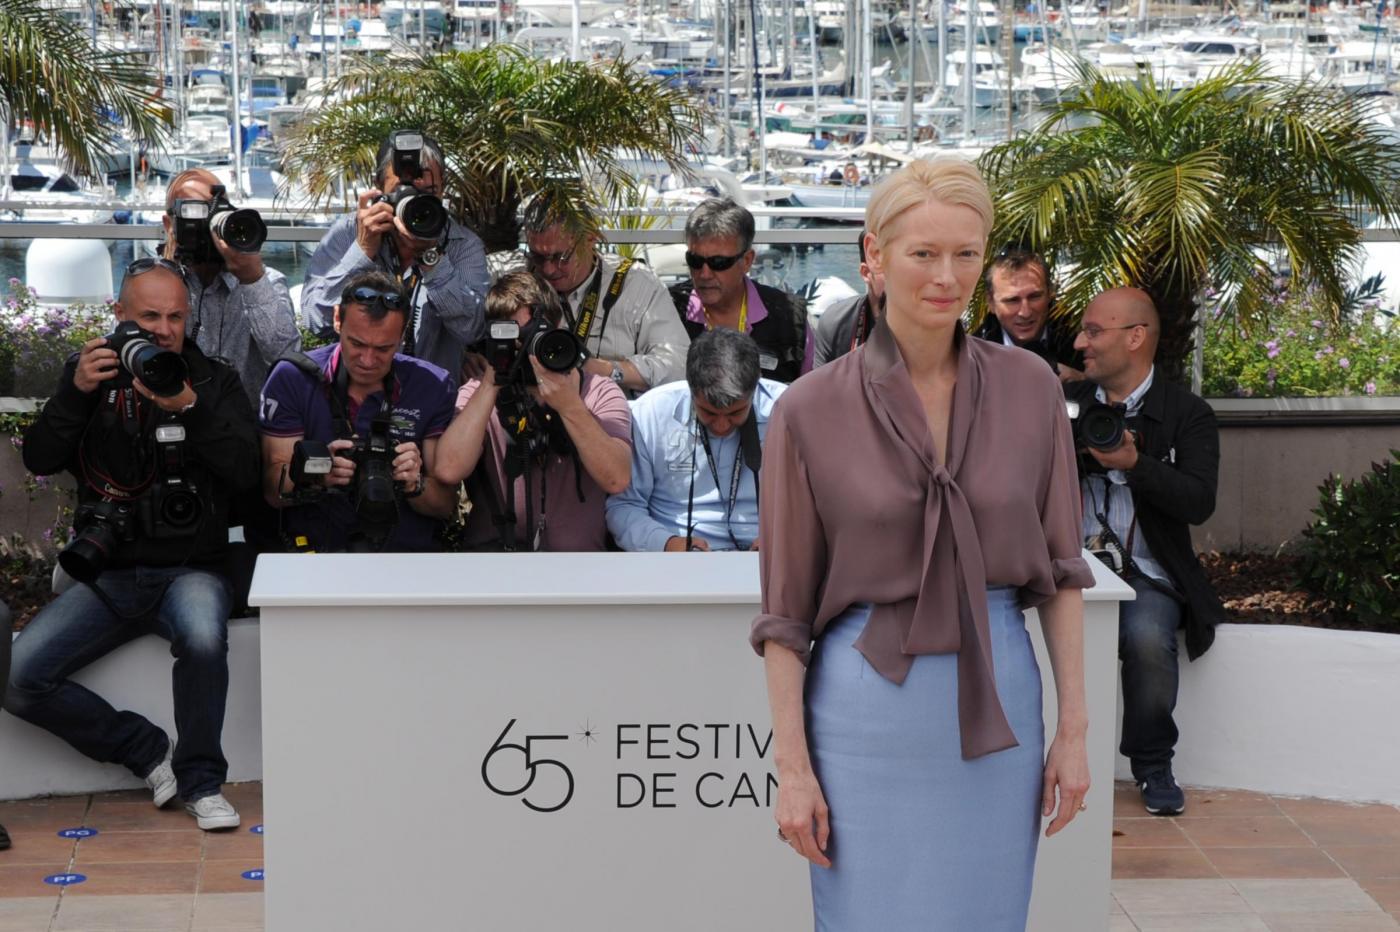 Festival del cinema di Cannes, photocall del film "Moonrise kingdom"02